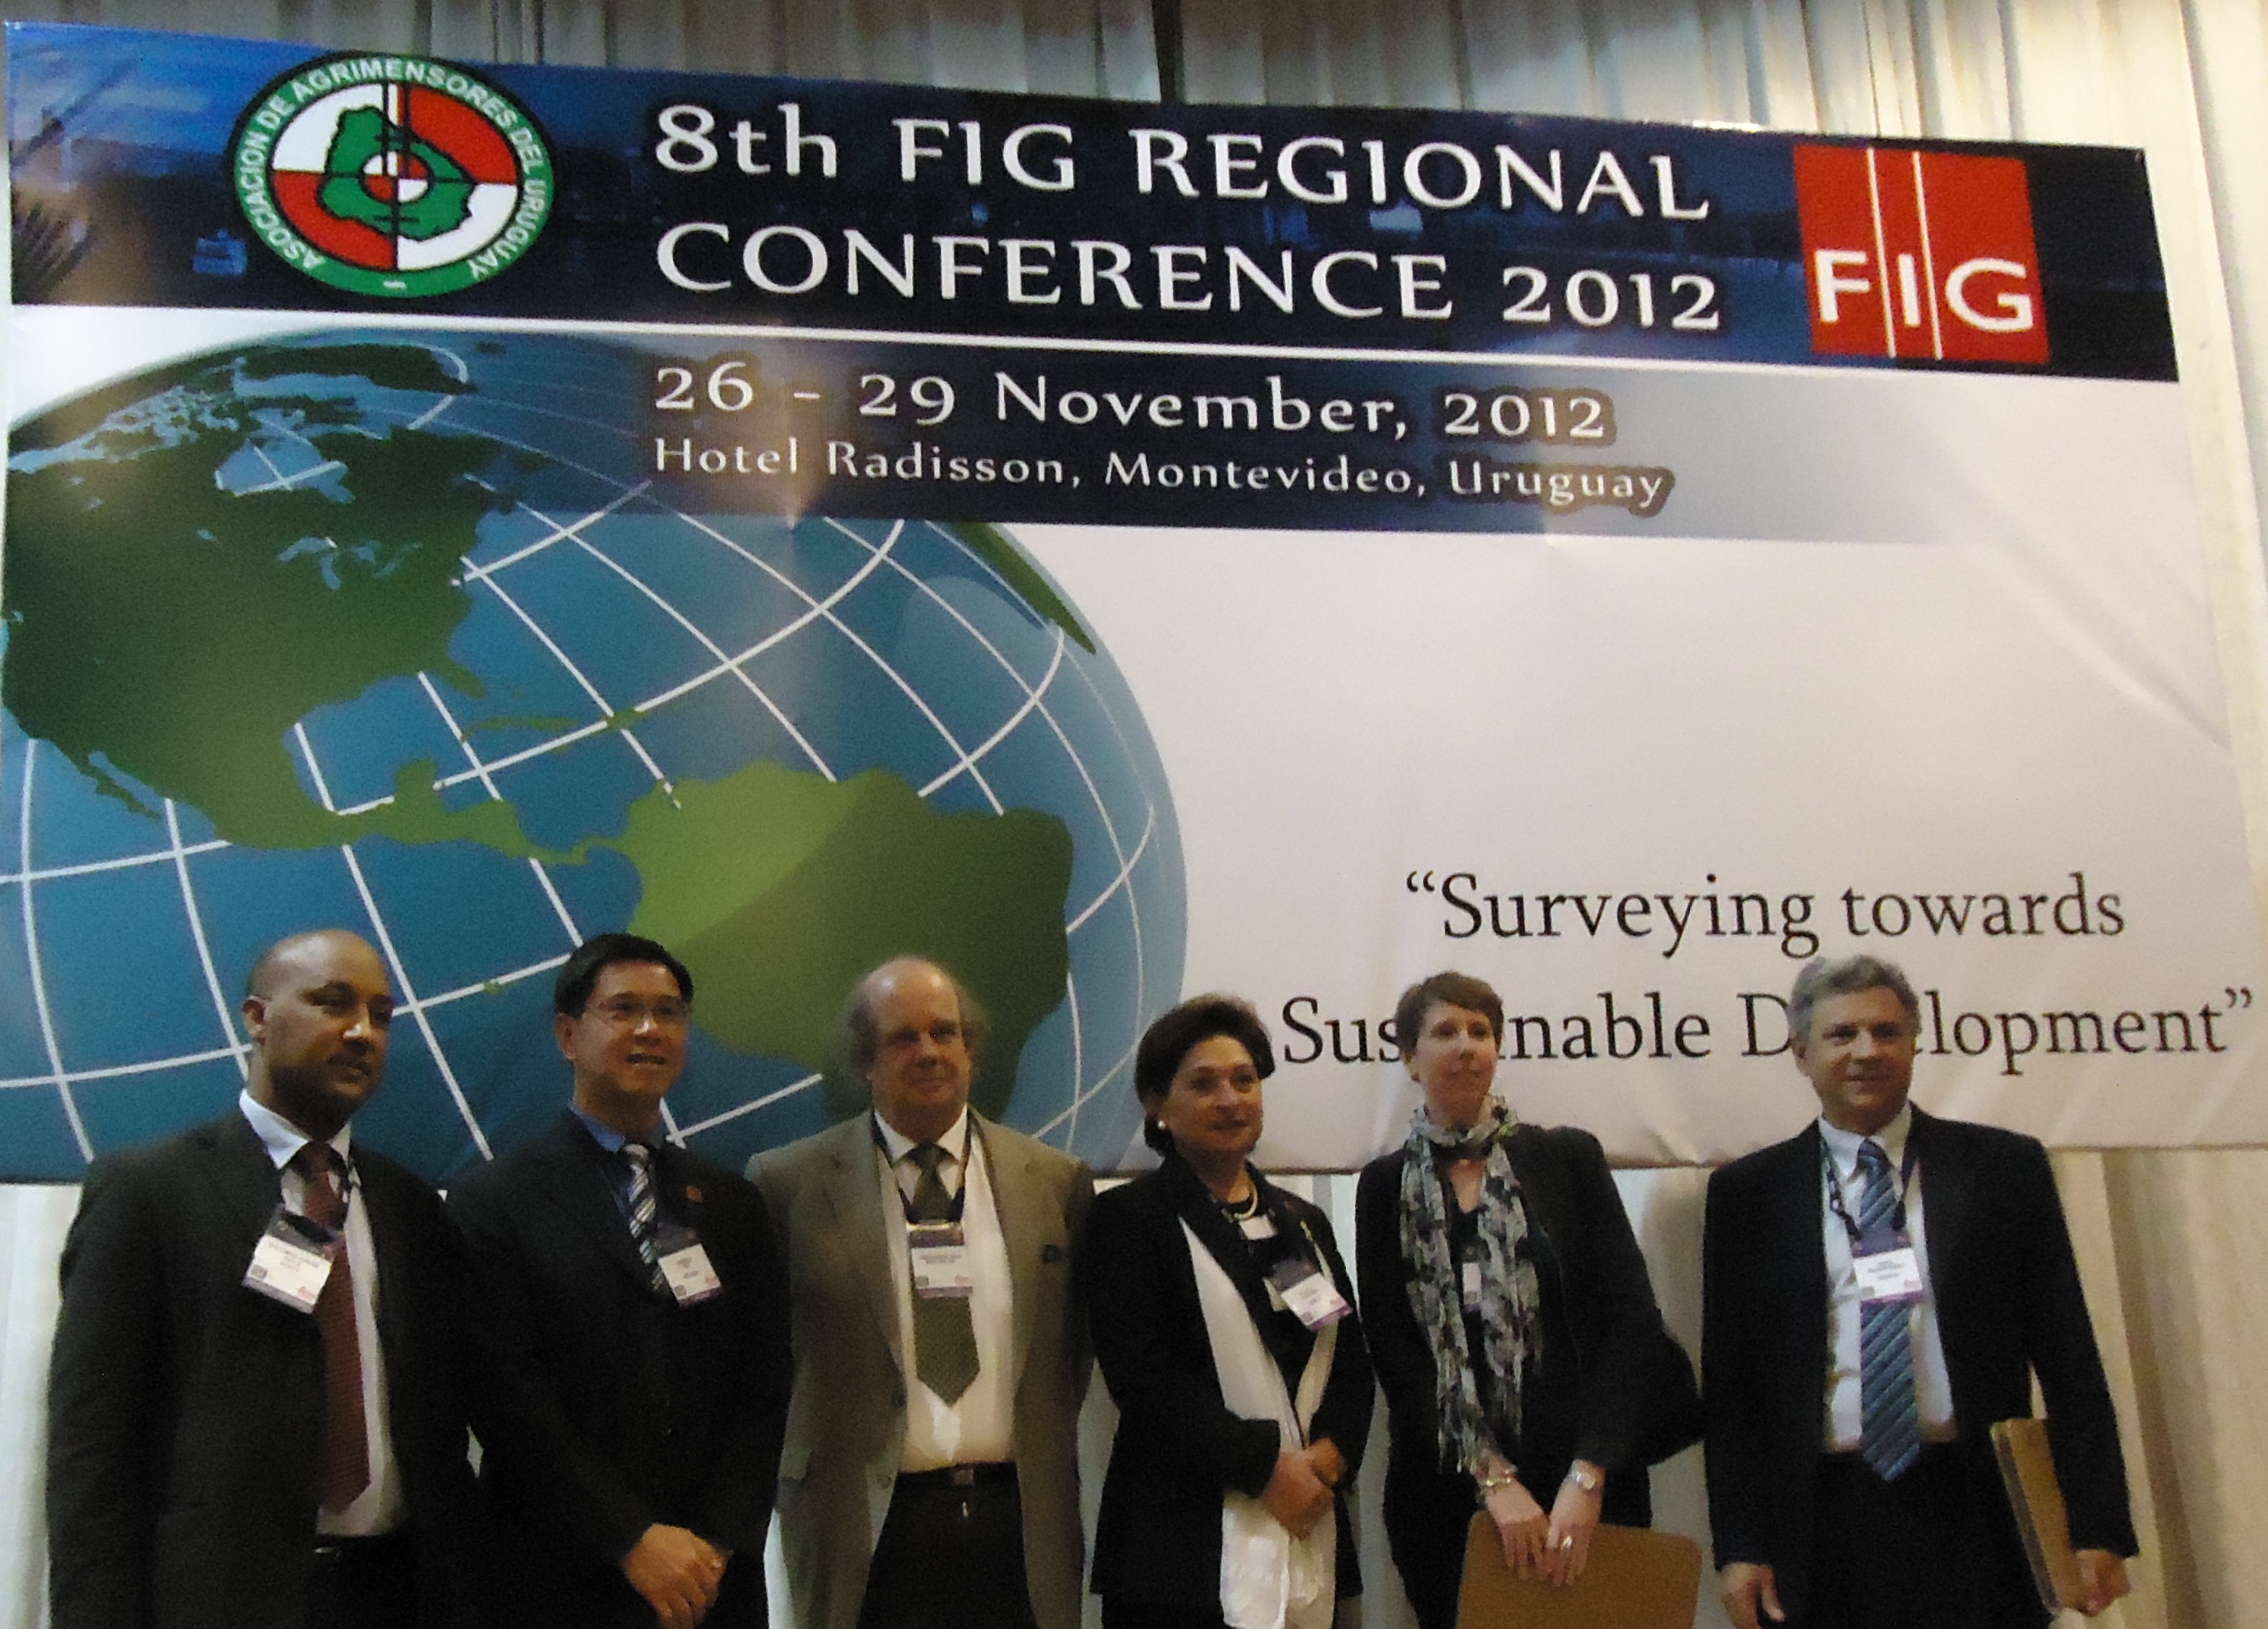 8th FIG REGIONAL CONFERENCE. Dr. Solomon Abebe Haile; Pres. CheeHai Teo; Emb. John Biehl Del Río; Ms. Dalal Alnaggar, FIG Vice President; Ms. Victoria Stanley; Mr. Jorge Franco(26 de noviembre de 2012)